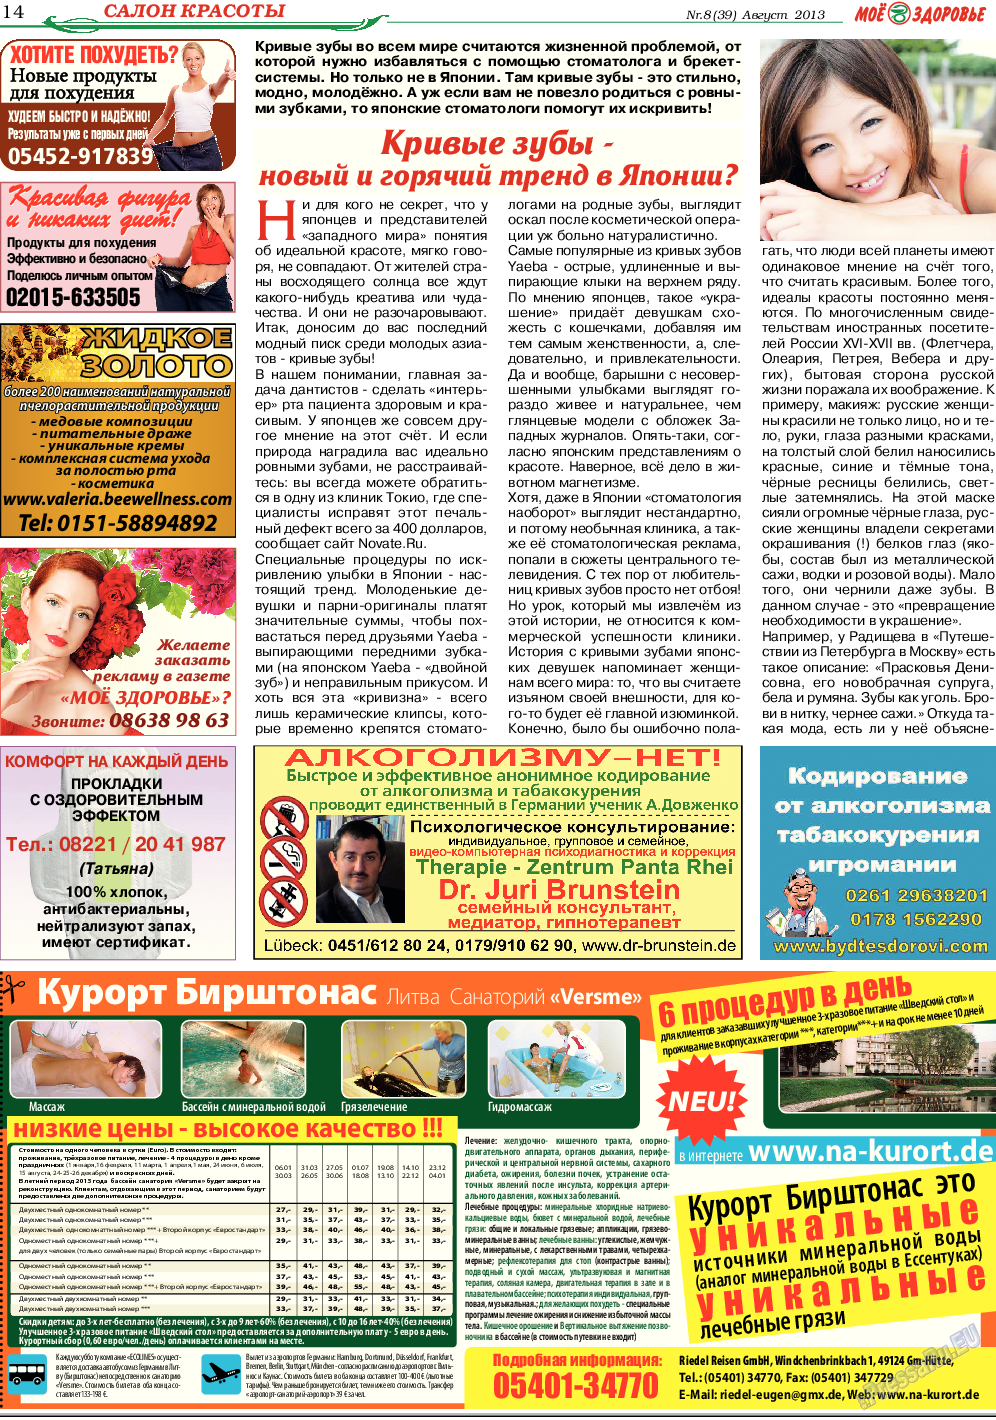 Кругозор, газета. 2013 №8 стр.14